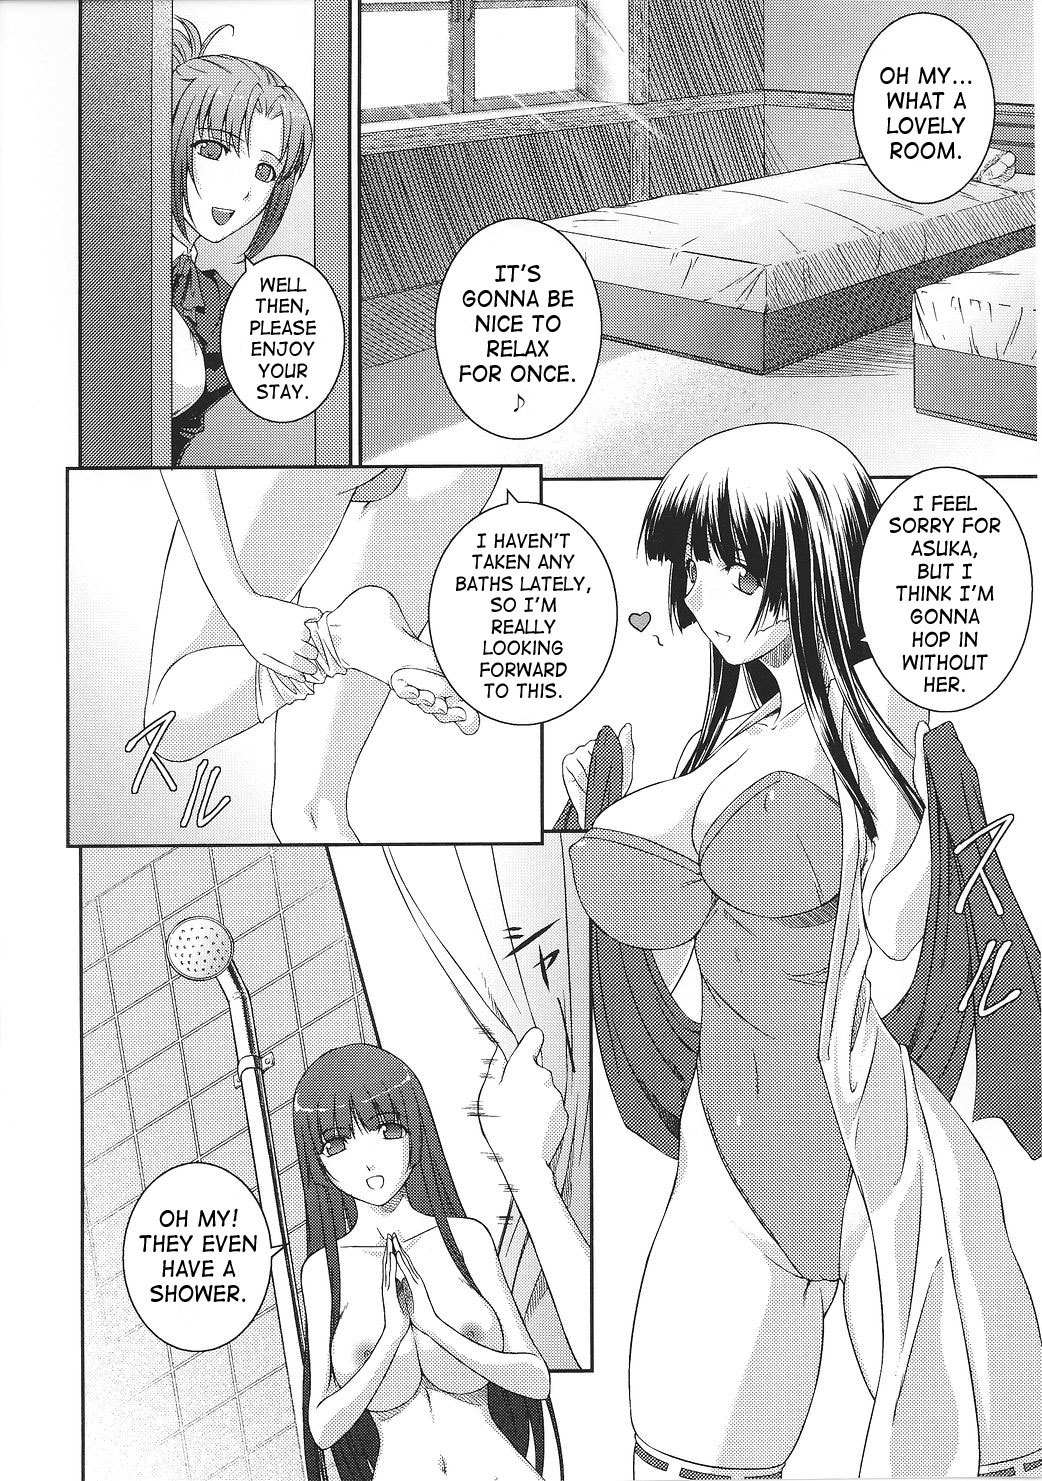 Asuka and Shizuru 16 hentai manga